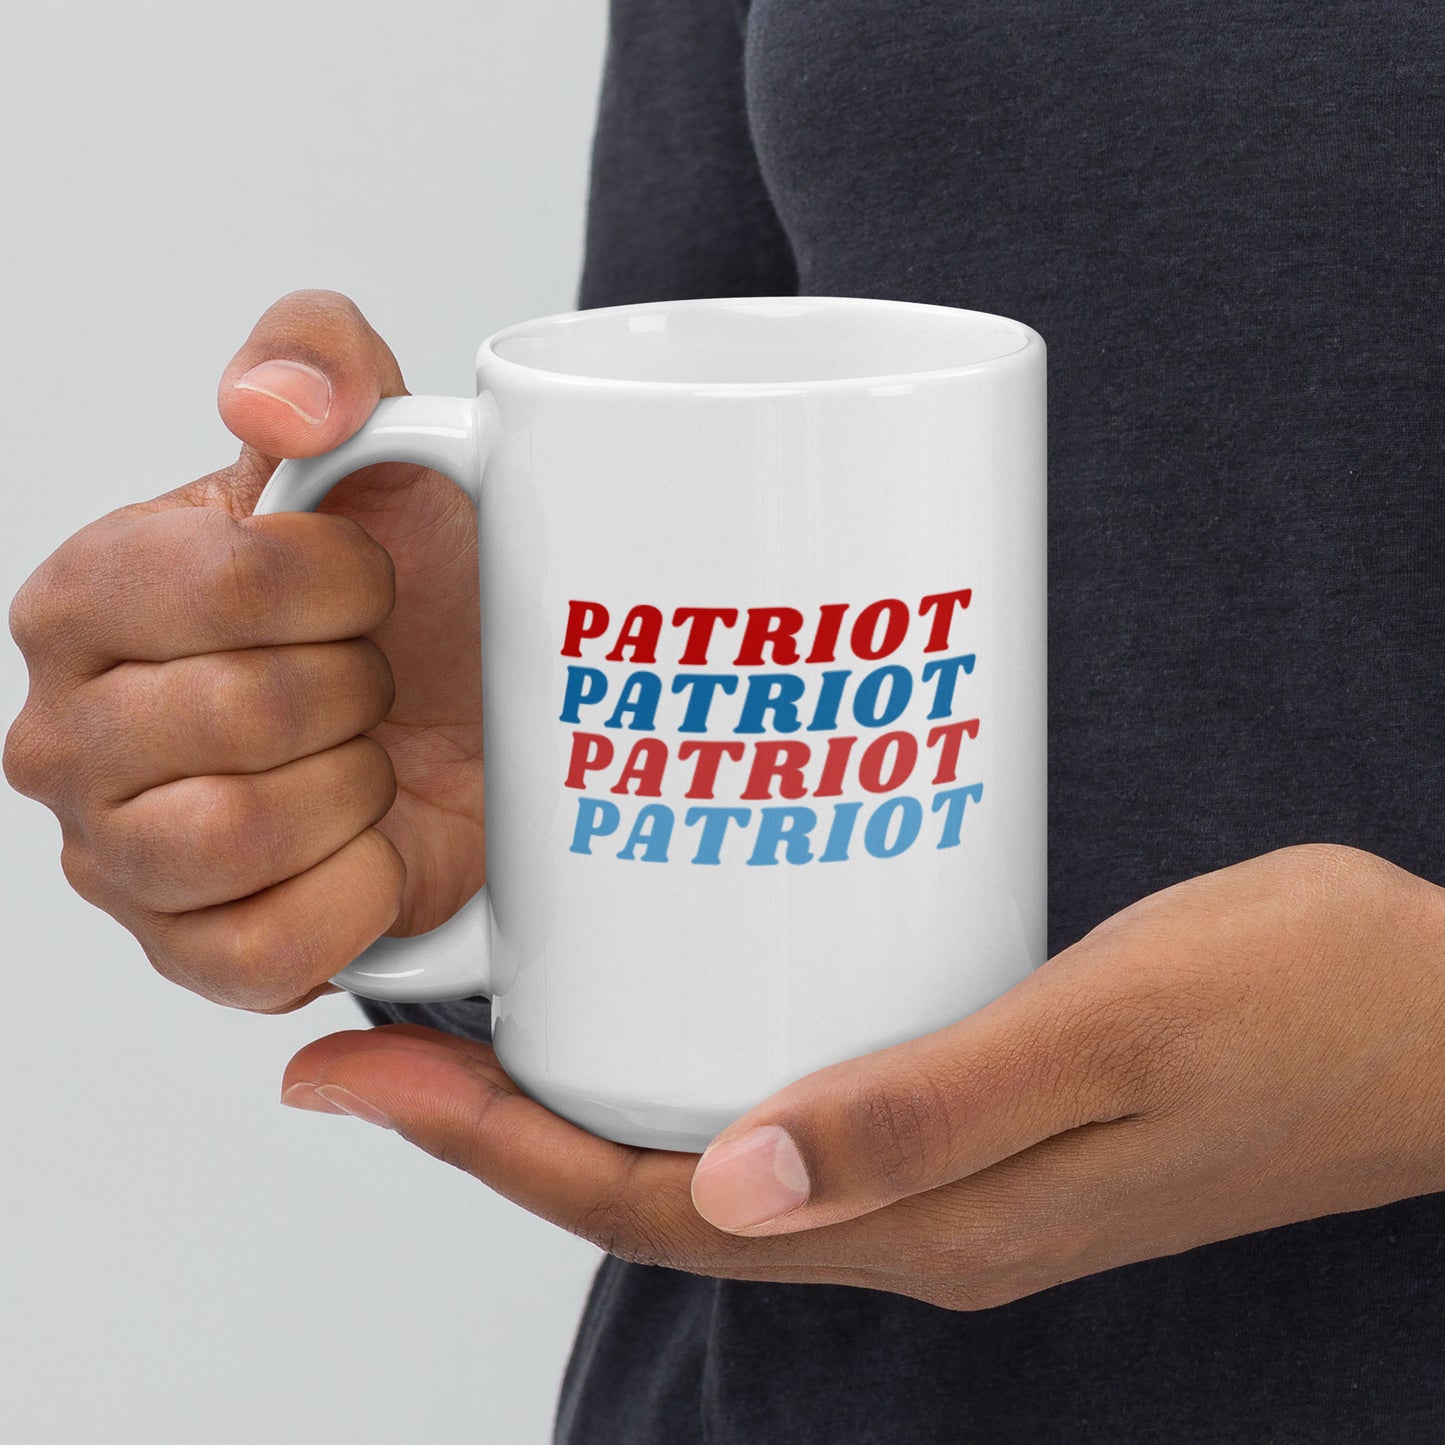 Patriot Mug